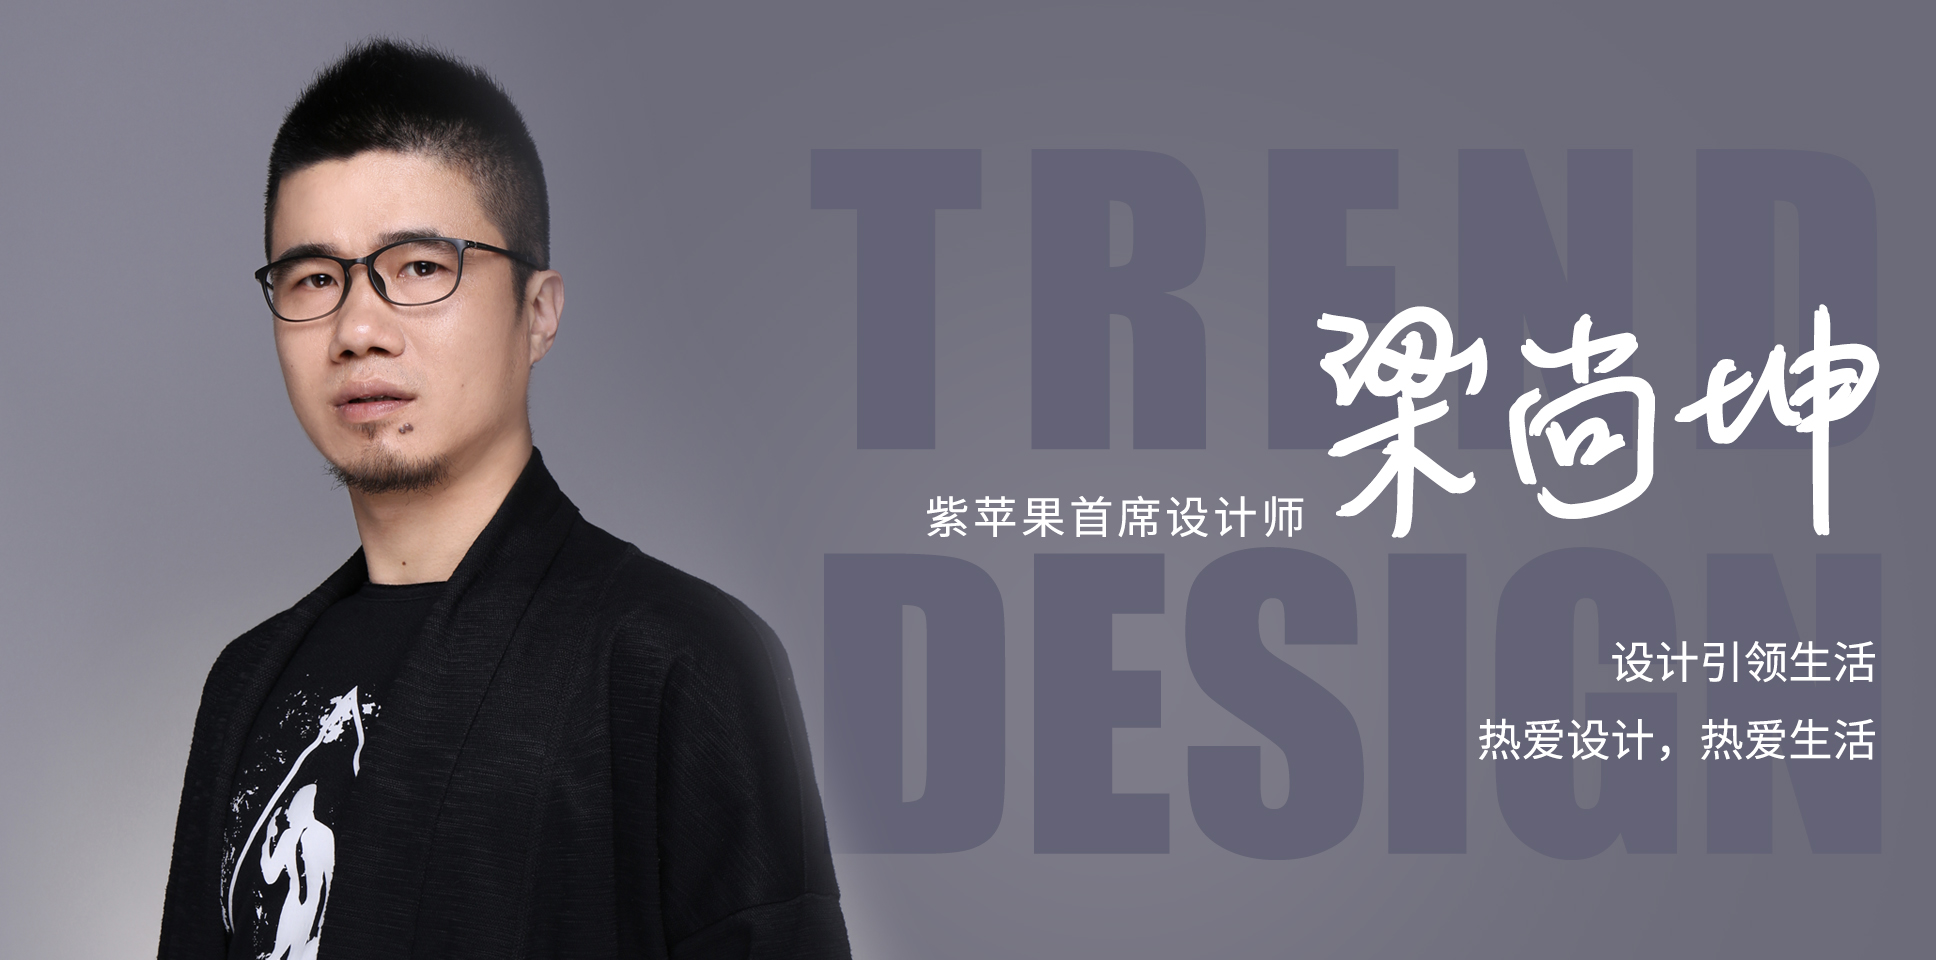 紫苹果首席设计师梁尚坤——设计引领生活